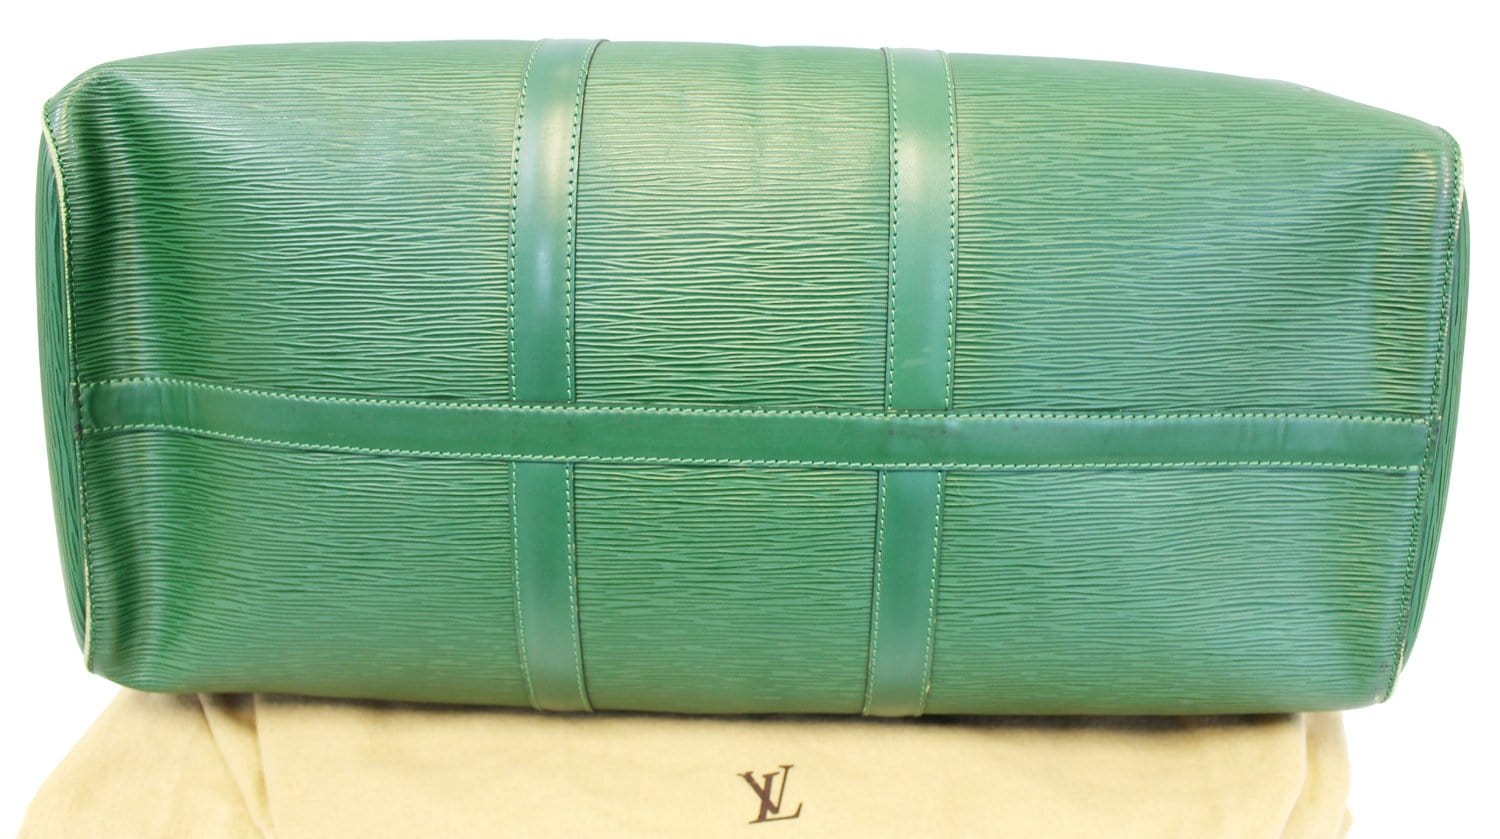 Louis Vuitton Vintage Louis Vuitton Keepall 45 Green Epi Leather